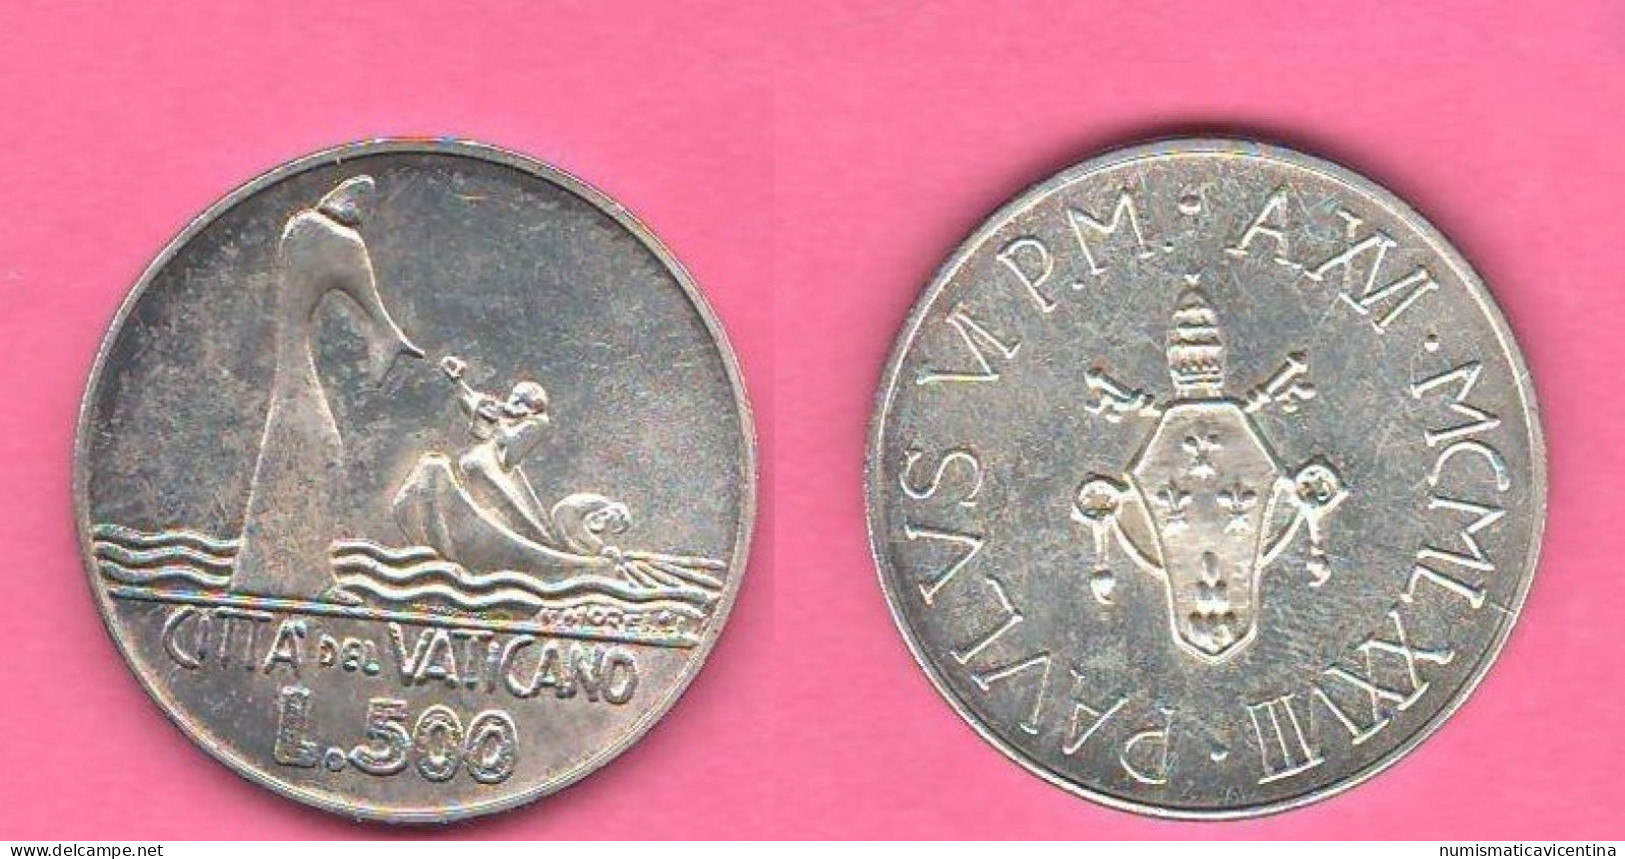 Vaticano 500 Lire 1978 Paolo VI° Anno XVI° Vatican City Silver Coin - Vatican